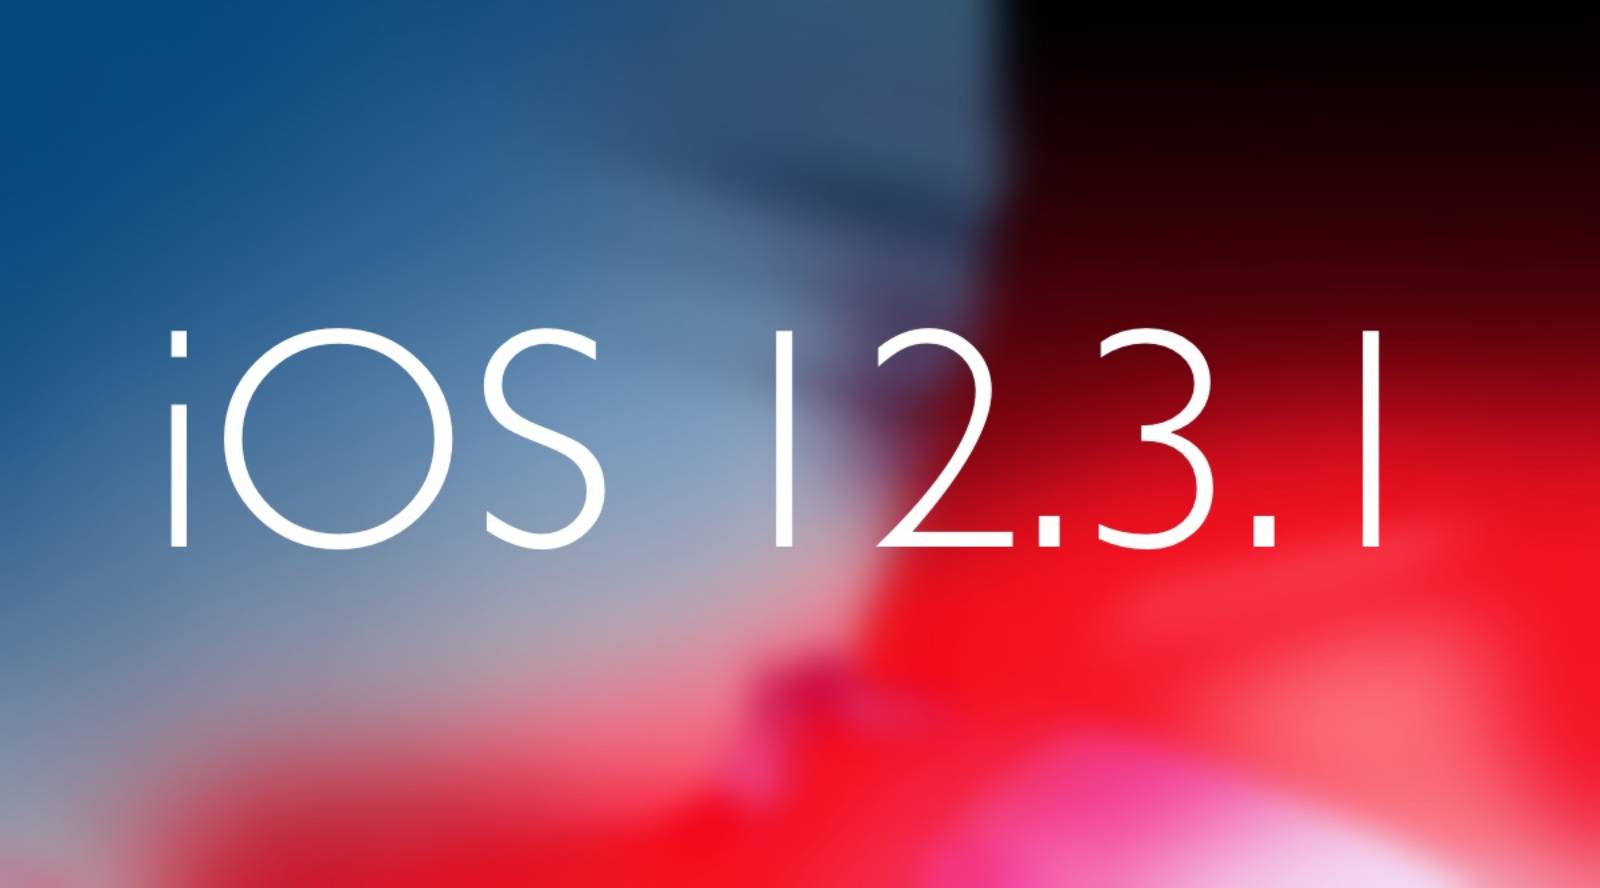 iOS 12.3.1 autonomie baterie